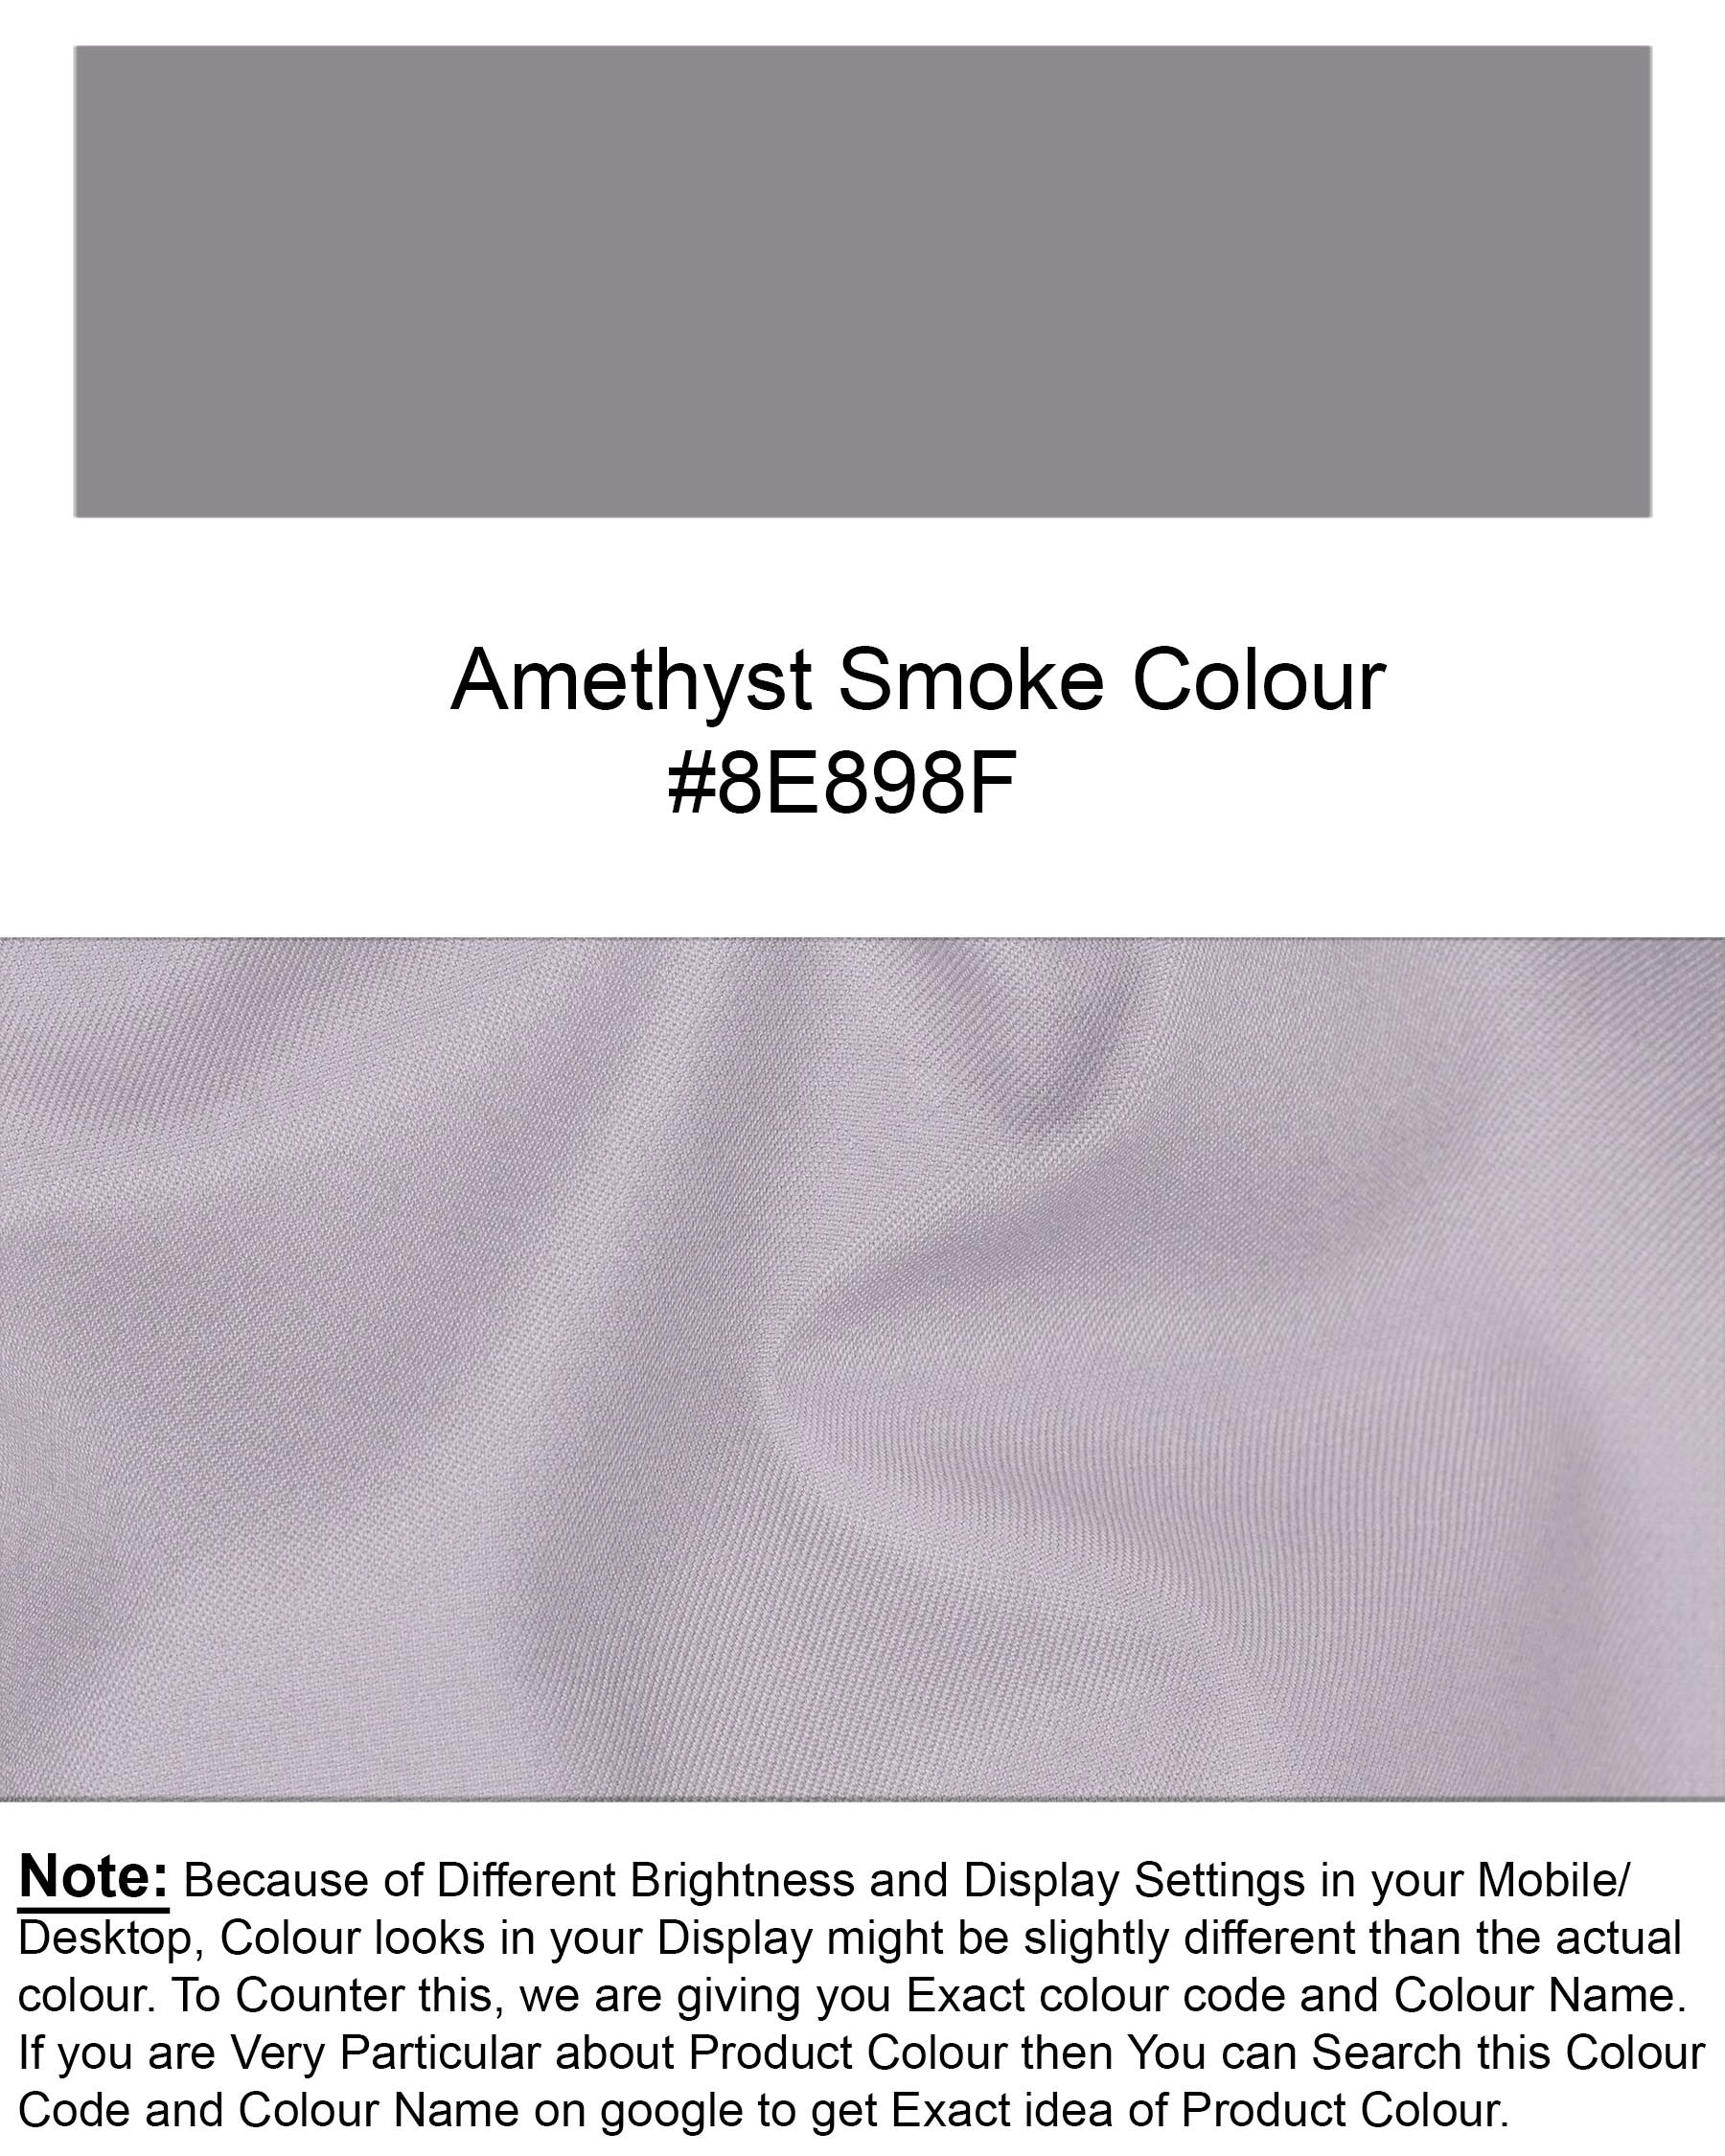 Amethyst Smoke Gray Pant T1945-28, T1945-30, T1945-32, T1945-34, T1945-36, T1945-38, T1945-40, T1945-42, T1945-44